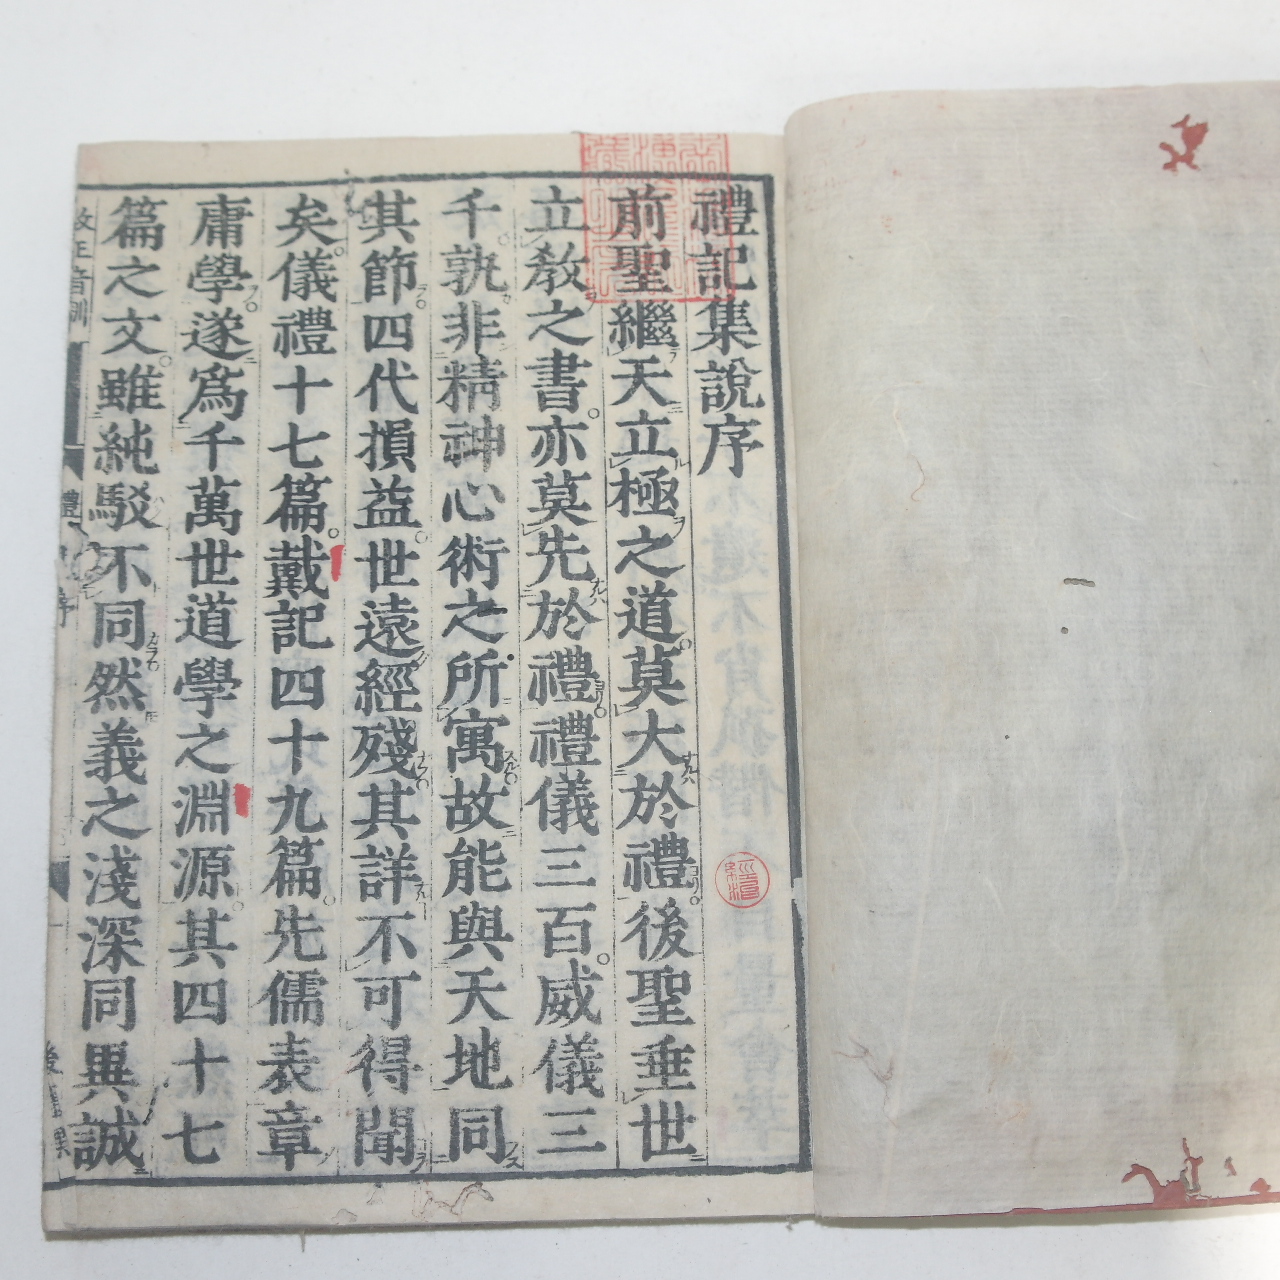 1800년대 일본목판본 예기(禮記) 3책